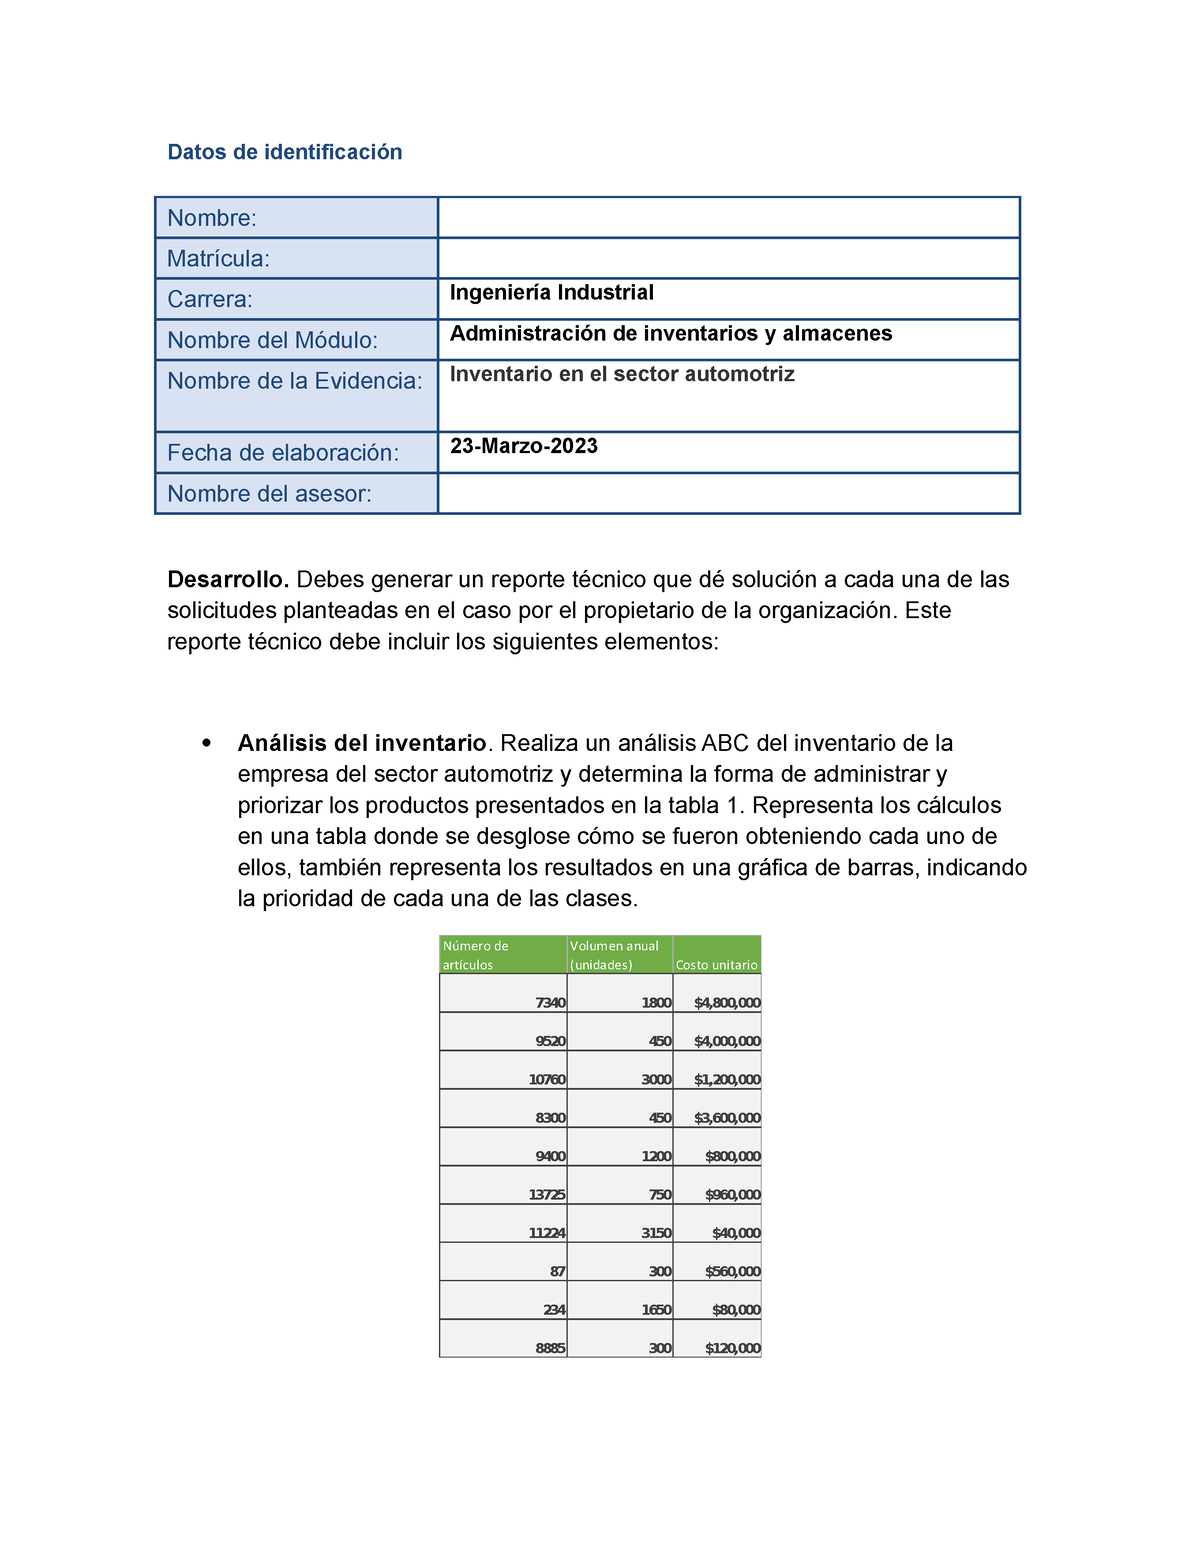 Garcia Alan Ea2 Inventario En El Sector Automotriz Datos De Identificación Nombre Matrícula 5773